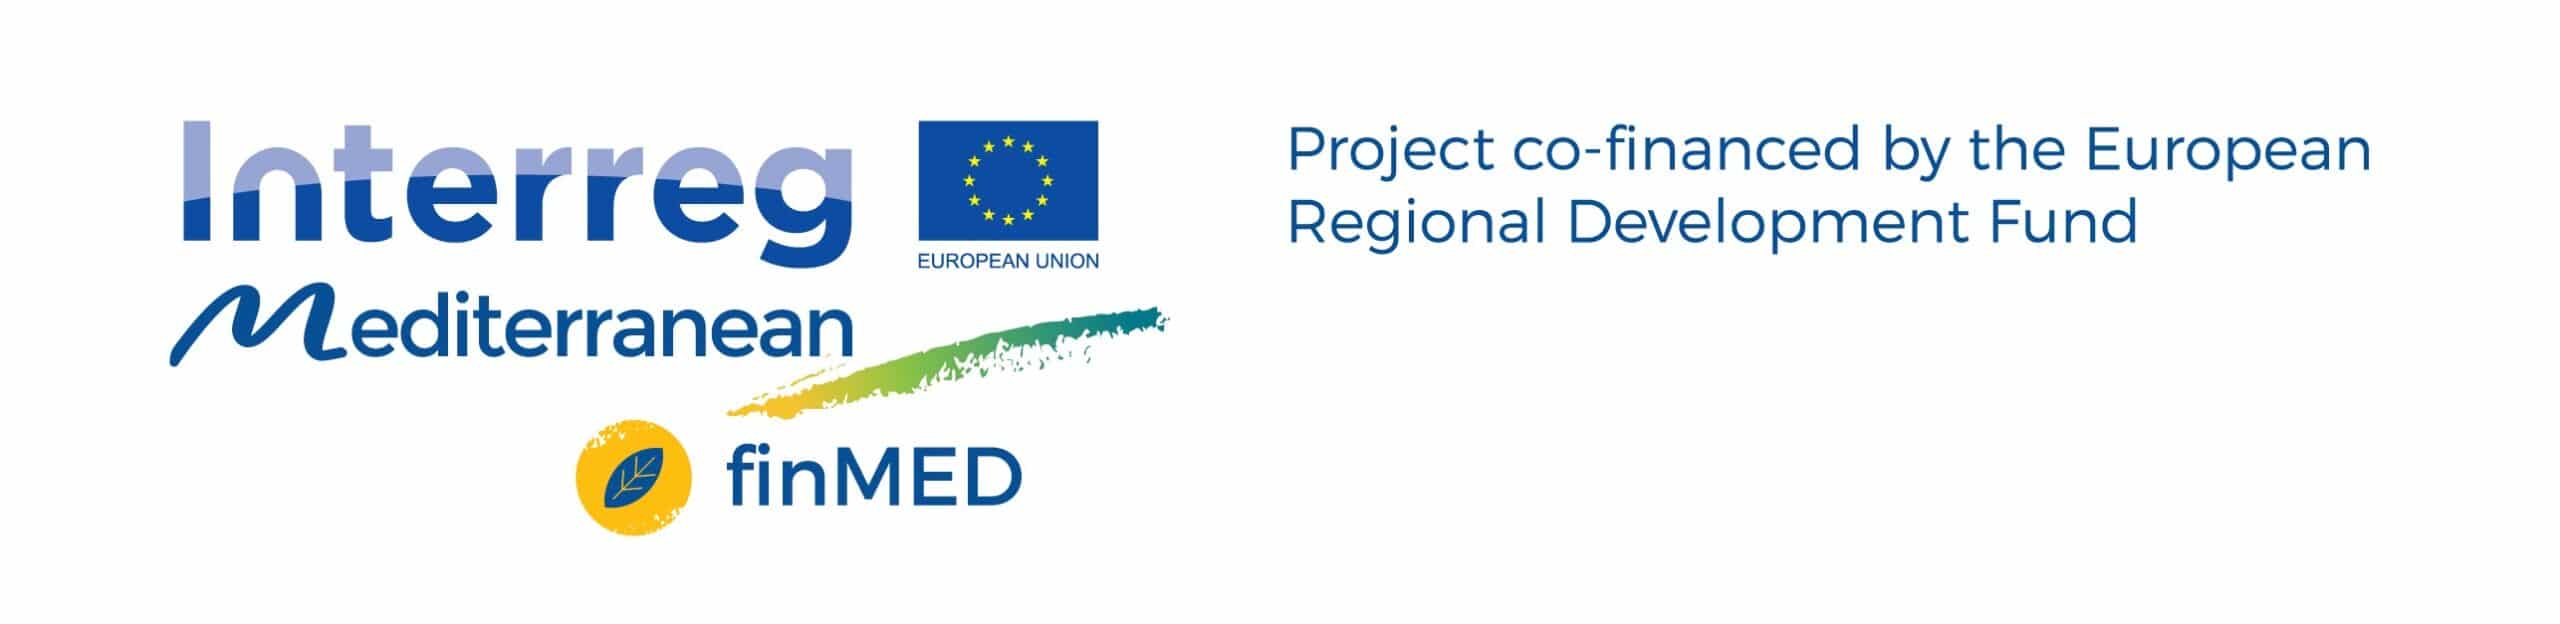 LOGO ERDF finMED En scaled finMED 旨在增加对绿色创新的资助